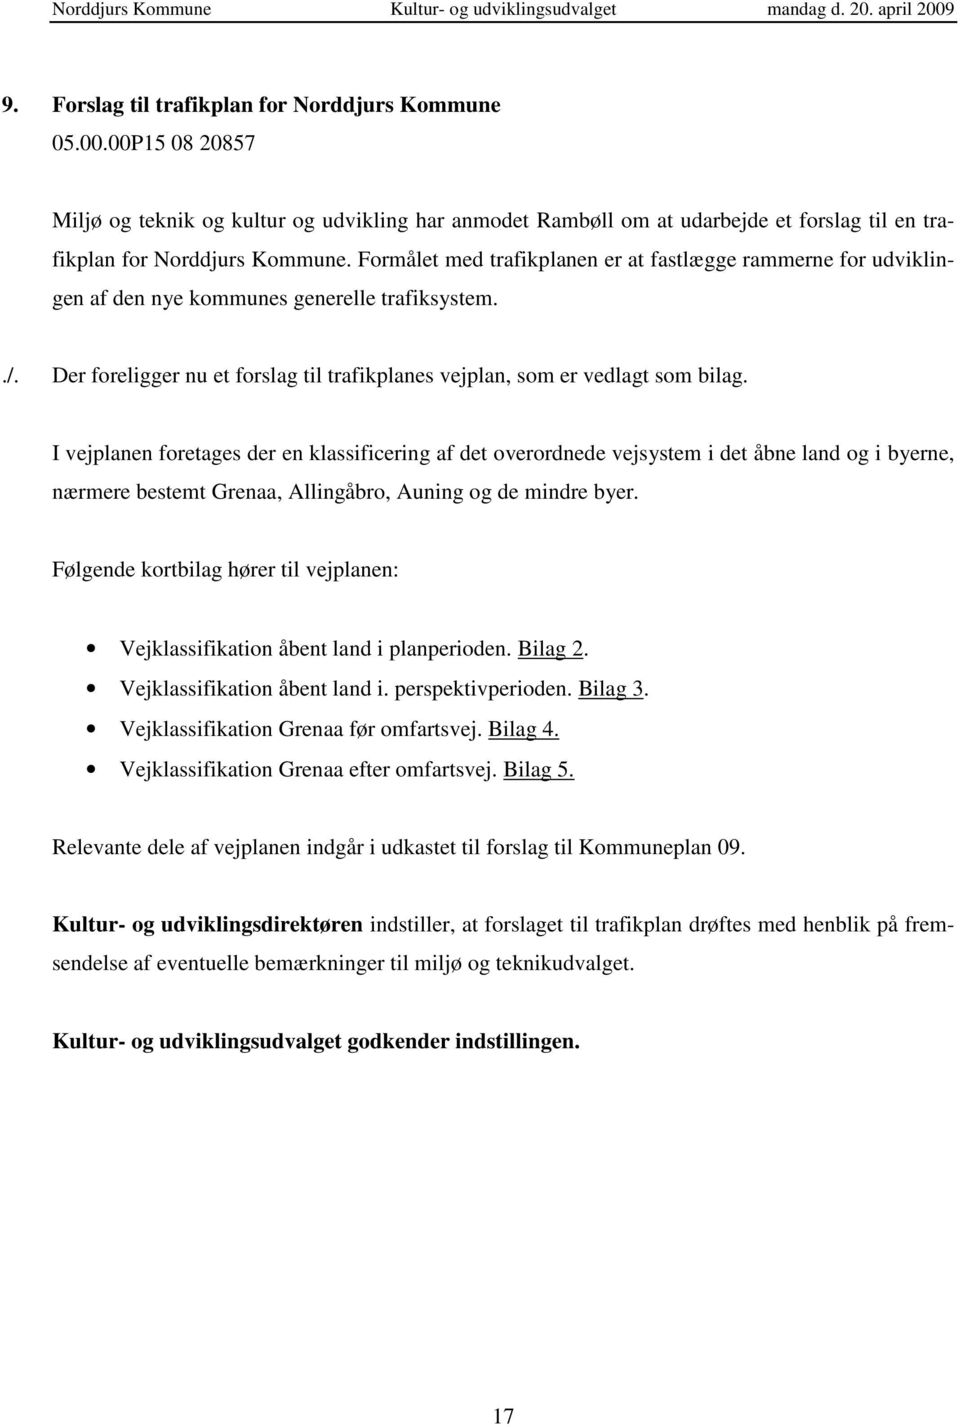 I vejplanen foretages der en klassificering af det overordnede vejsystem i det åbne land og i byerne, nærmere bestemt Grenaa, Allingåbro, Auning og de mindre byer.